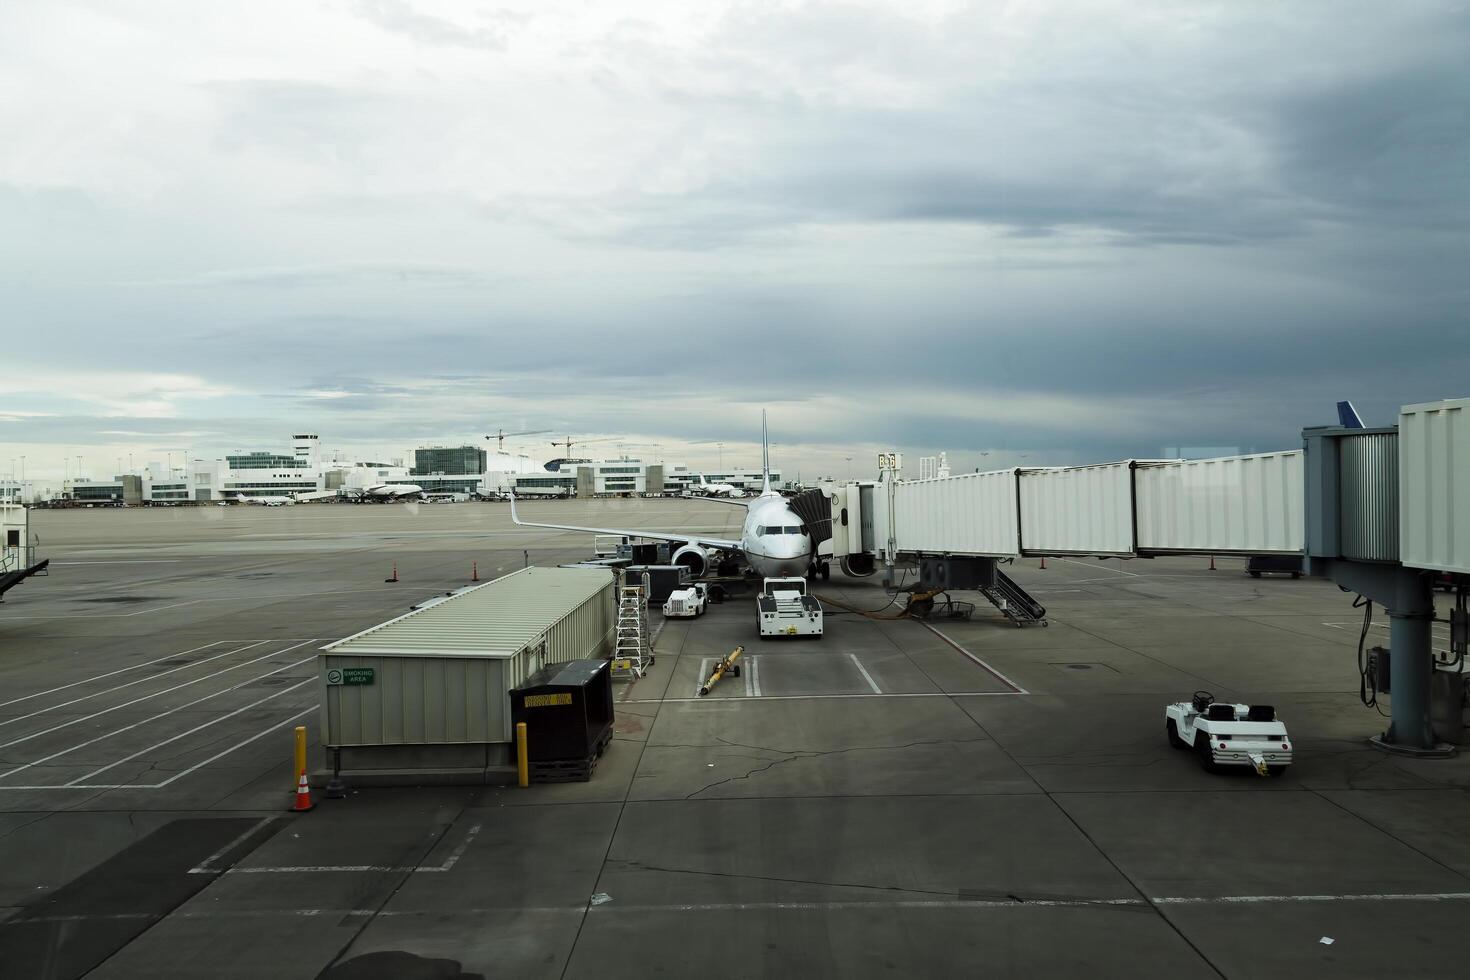 denver, co, 2014 - kommersiell jet på terminal internationell flygplats foto